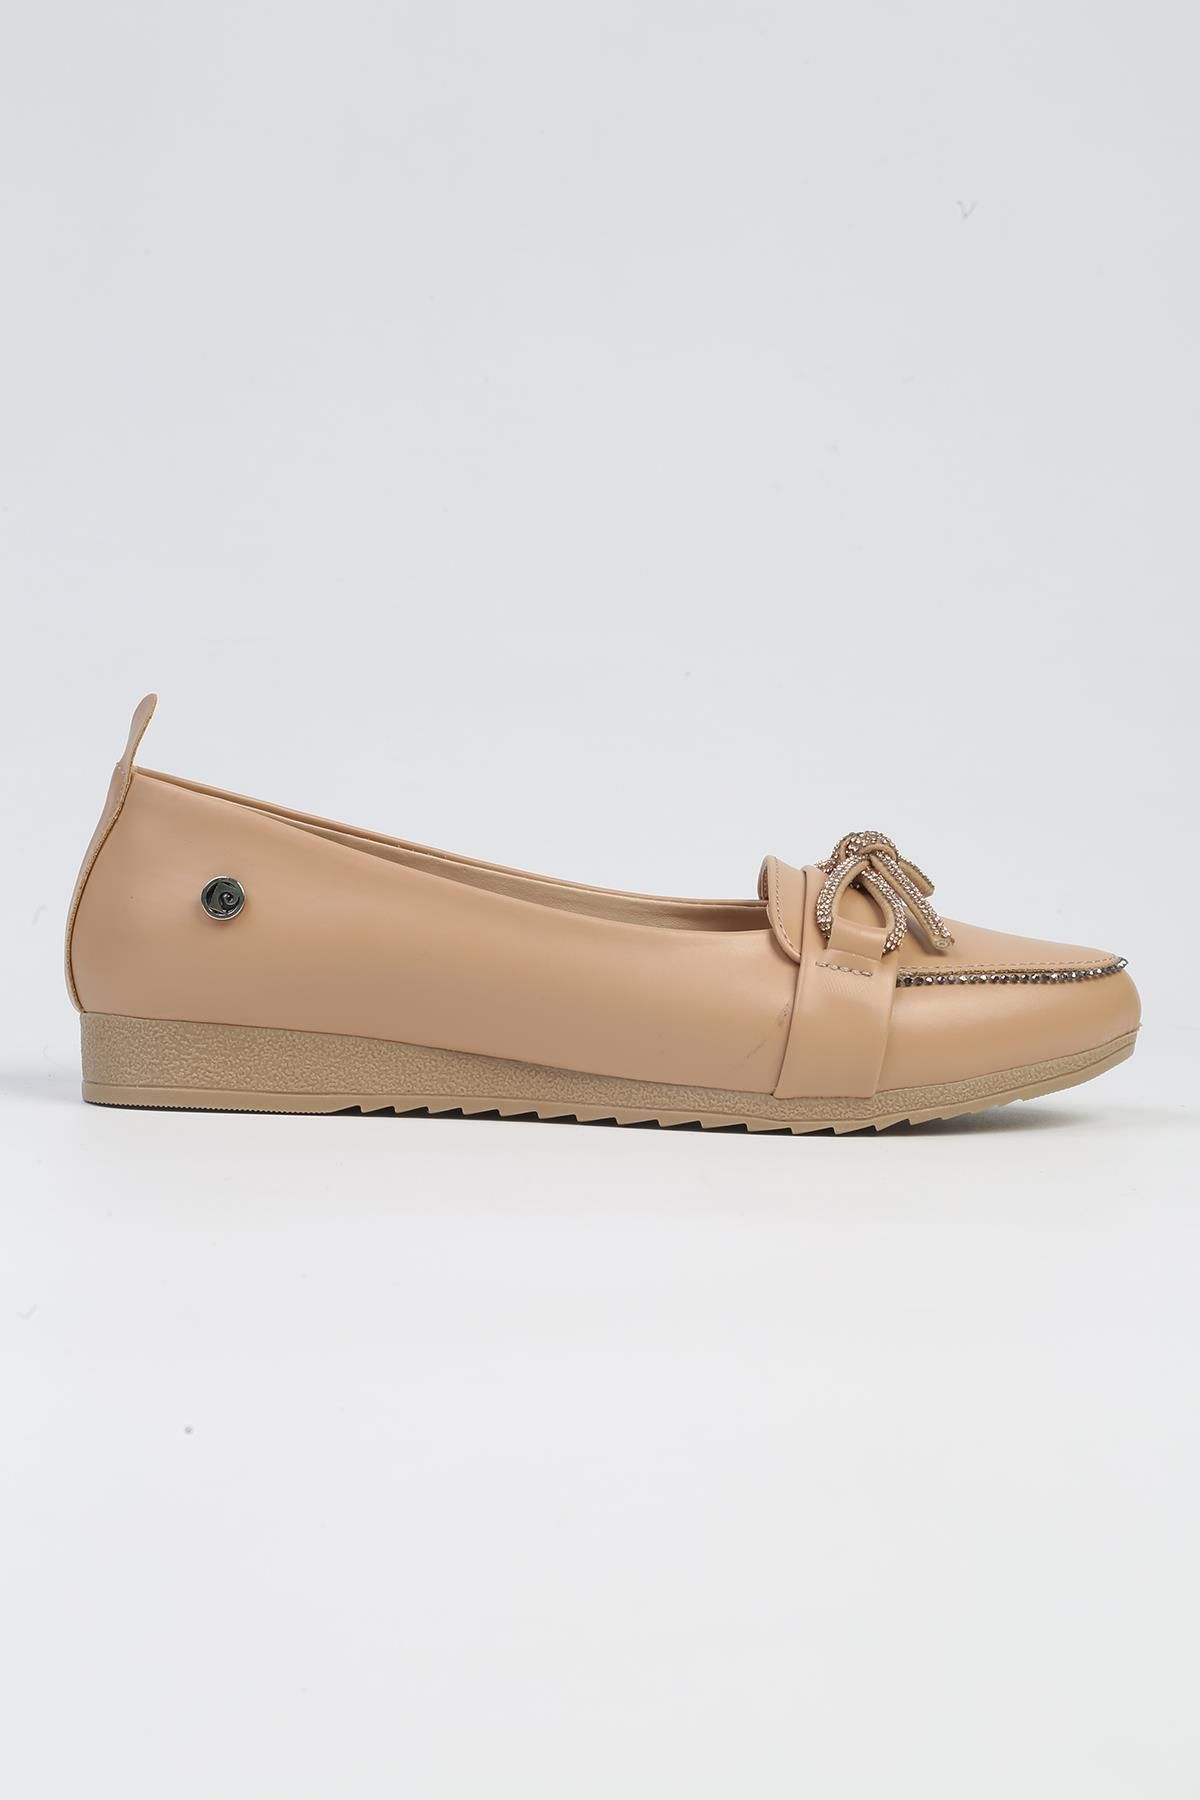 Pierre Cardin ® | PC-53018- 3962 Krem-Kadın Günlük Ayakkabı